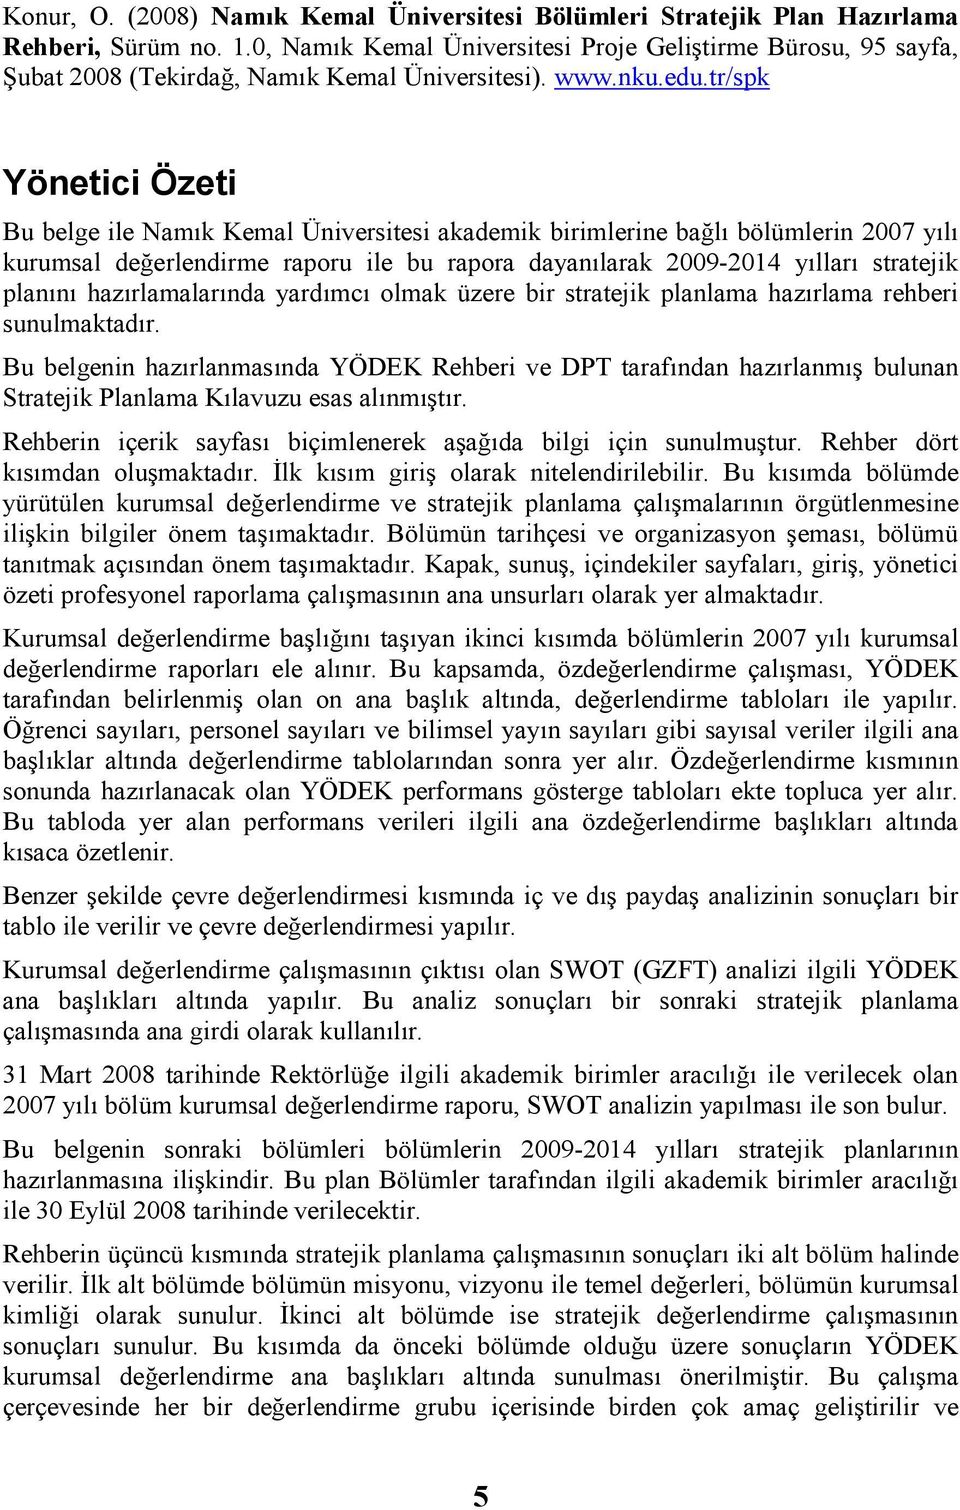 tr/spk Yönetici Özeti Bu belge ile Namık Kemal Üniversitesi akademik birimlerine bağlı bölümlerin 2007 yılı kurumsal değerlendirme raporu ile bu rapora dayanılarak 2009-2014 yılları stratejik planını